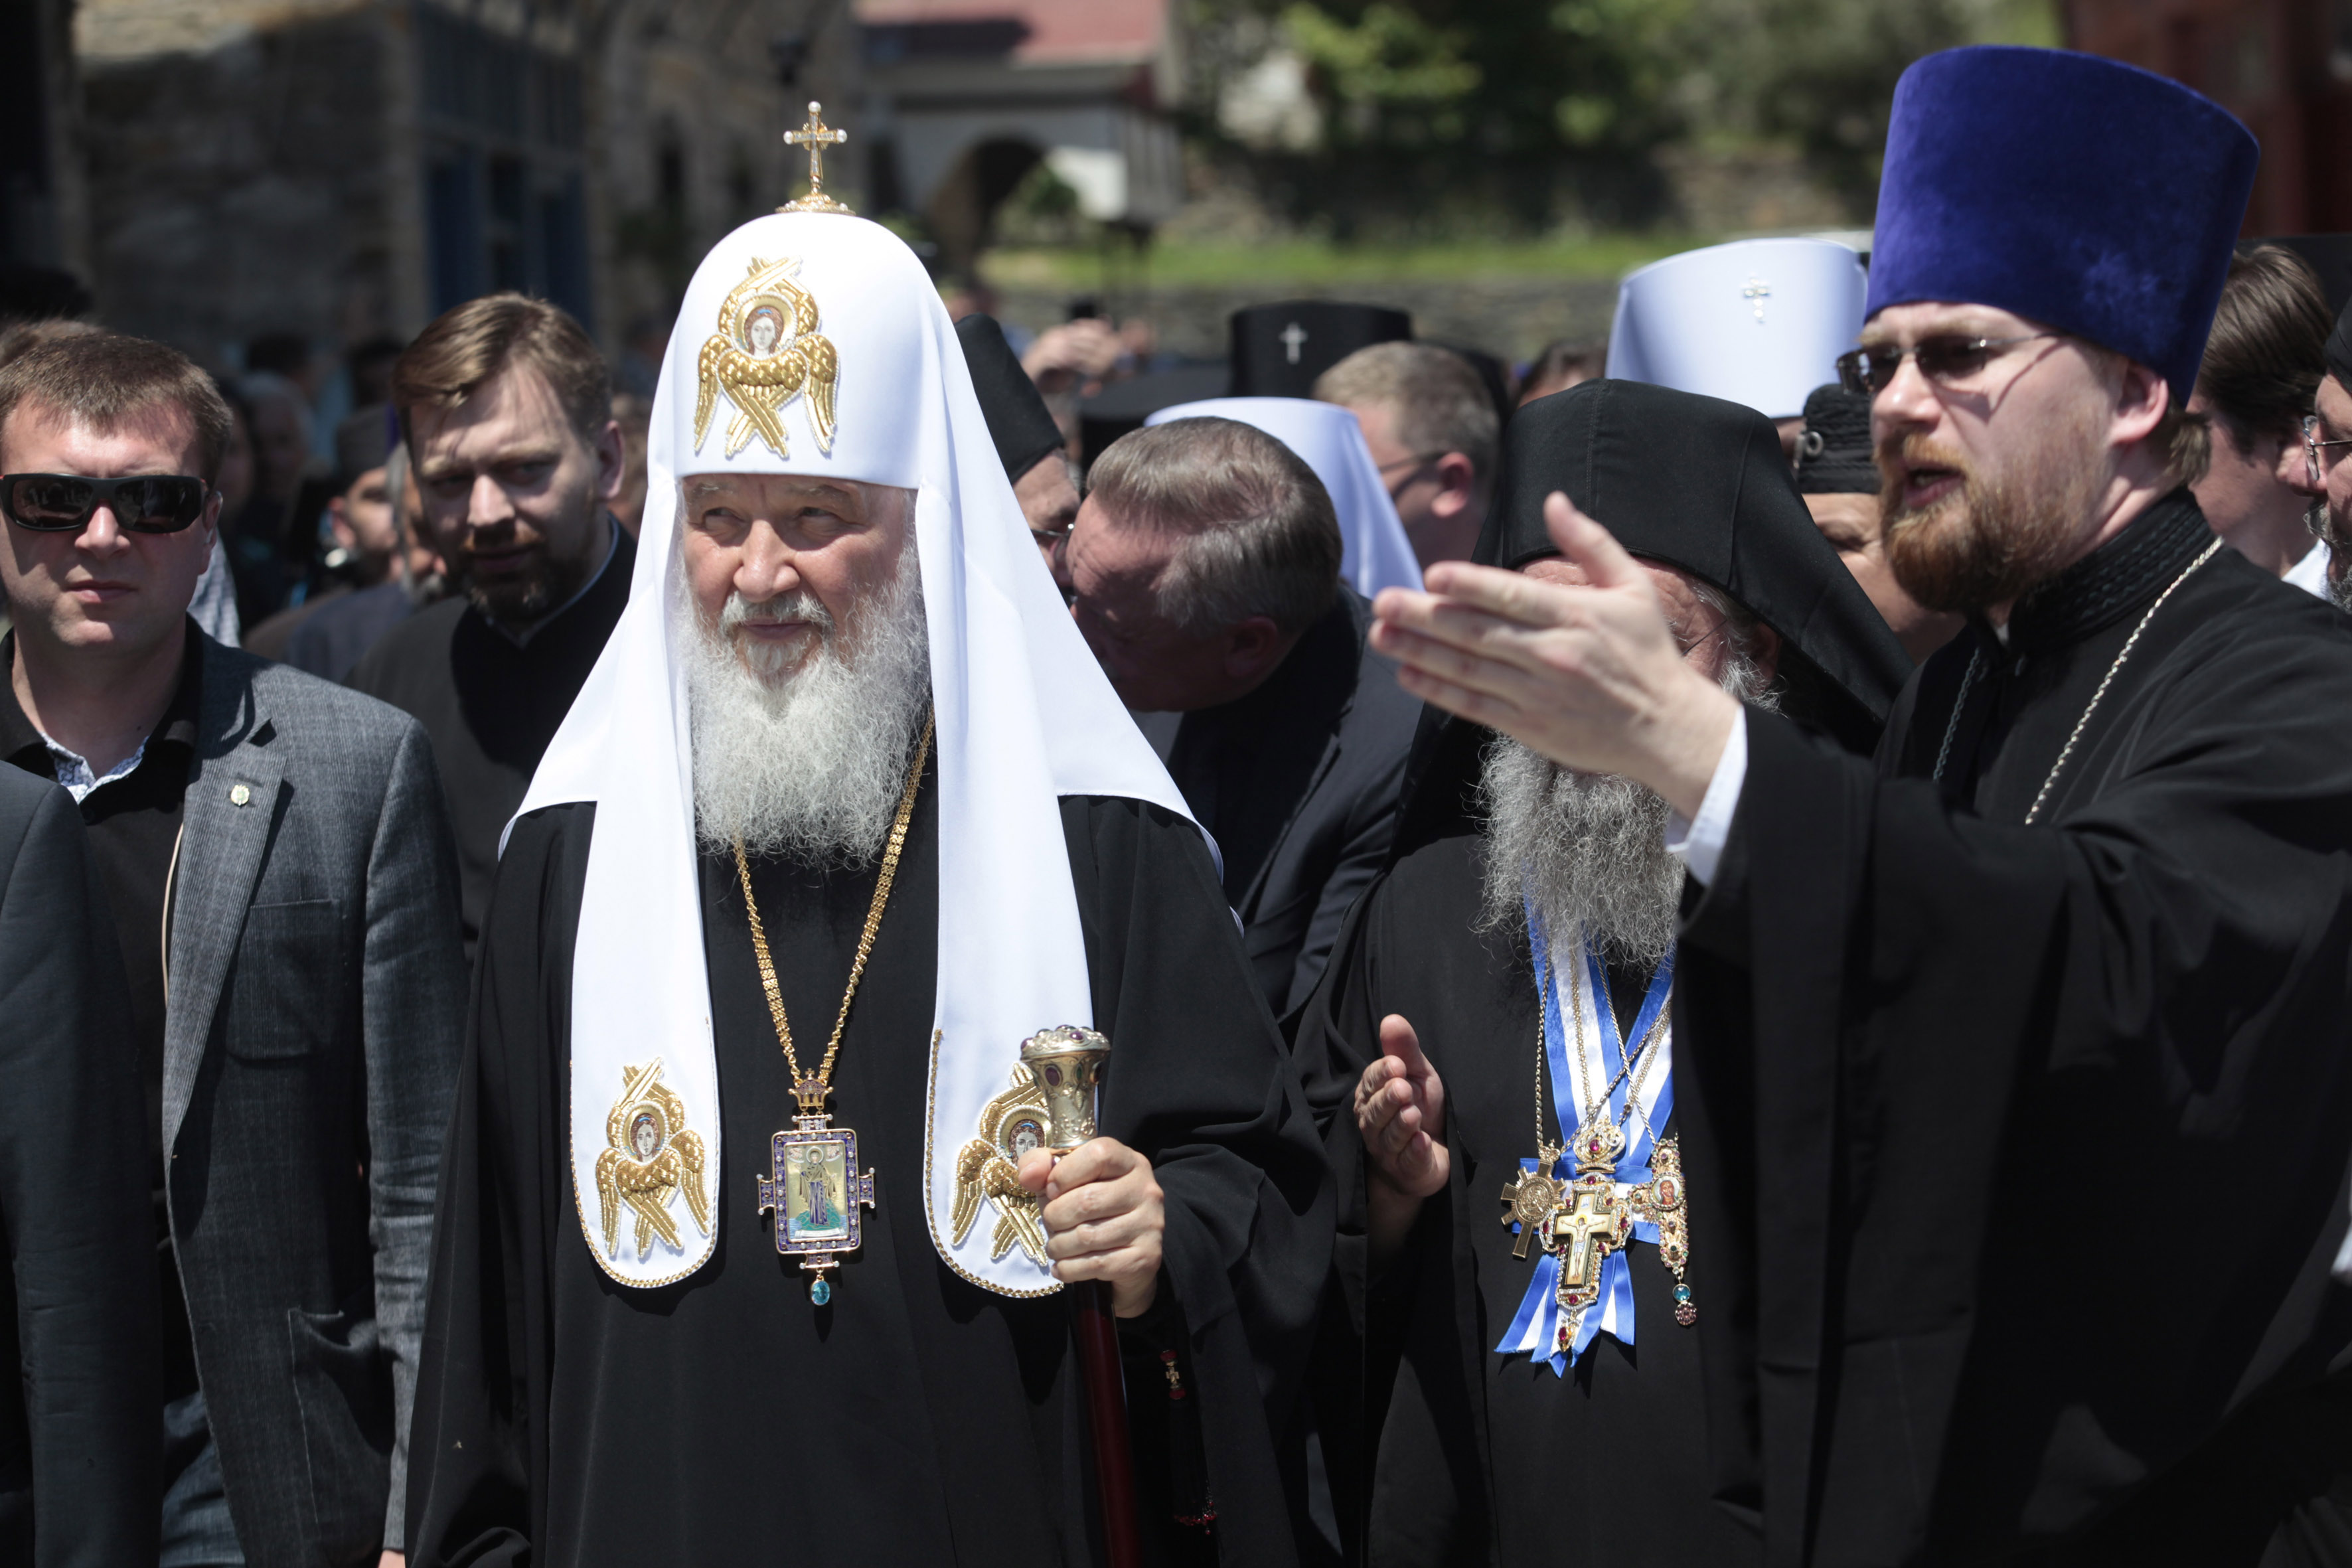 Μήνυμα ενότητας έστειλε από τις Καρυές ο πατριάρχης Μόσχας